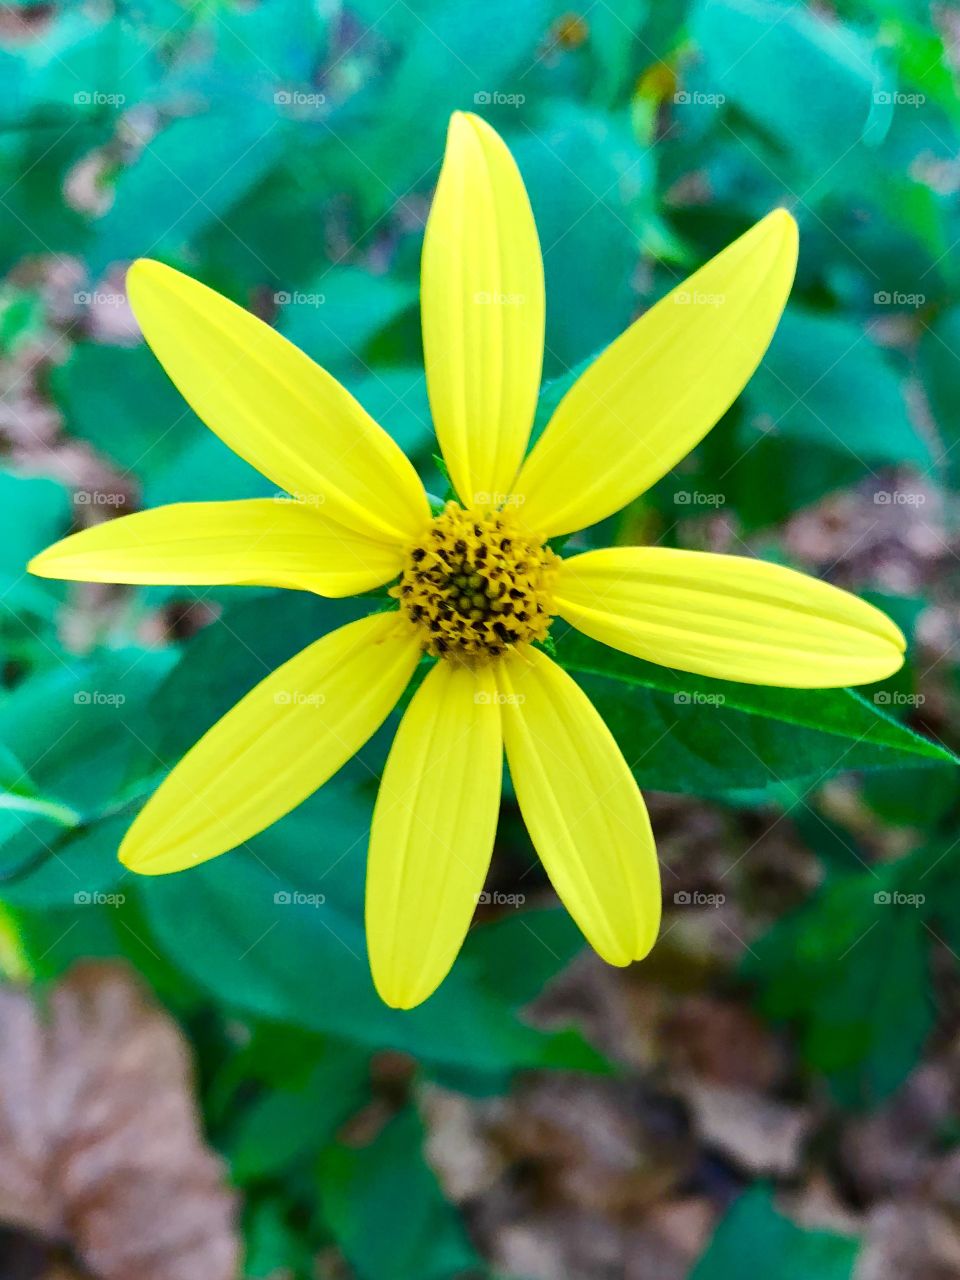 Wildflower yellow daisy